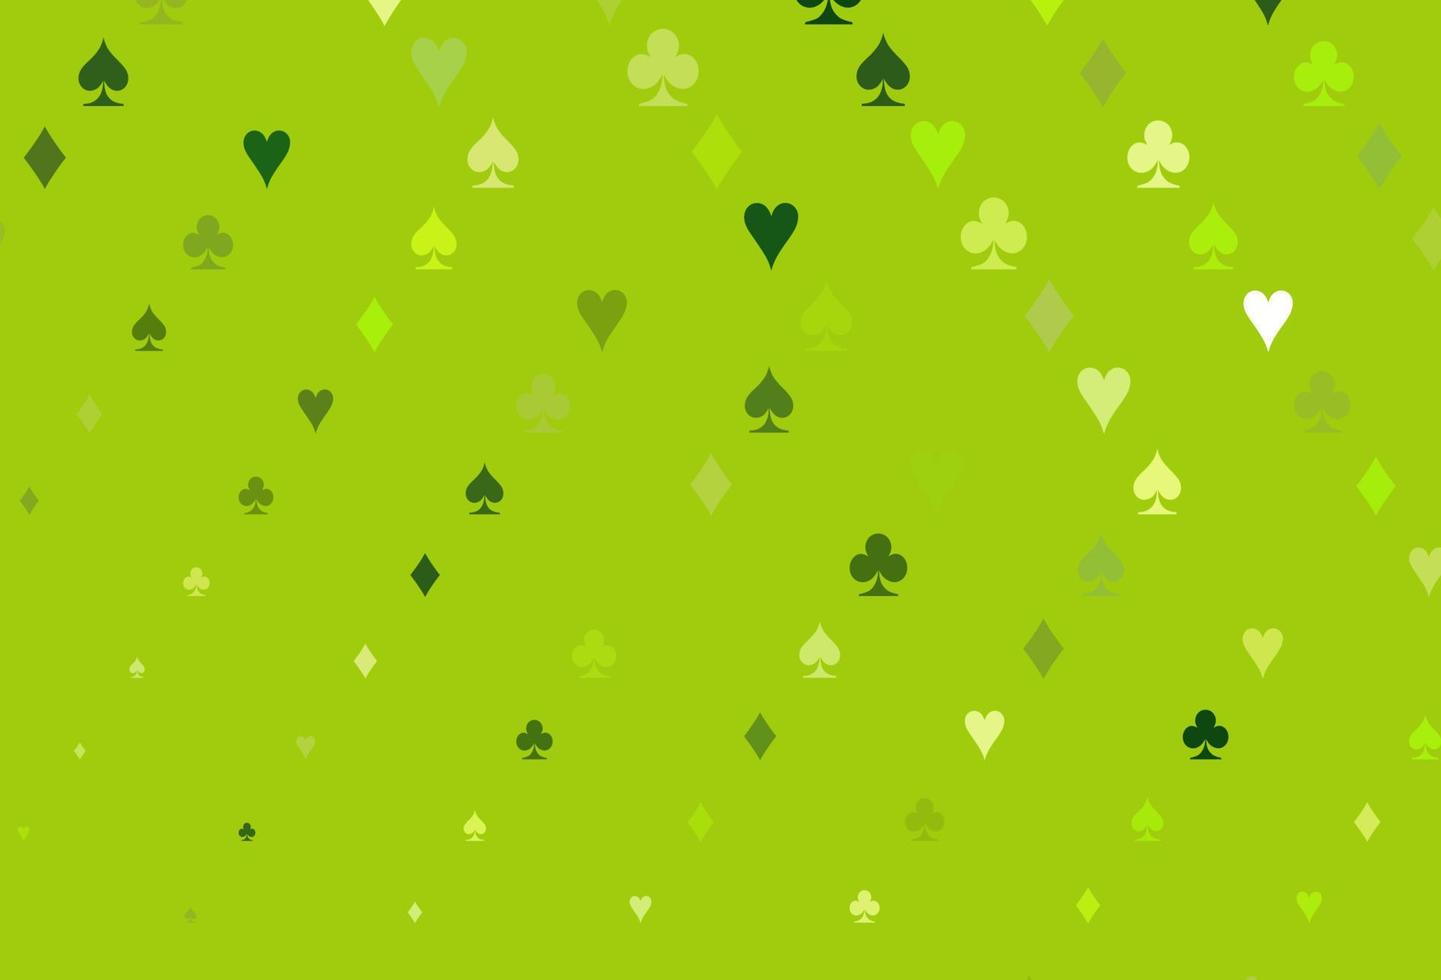 texture vettoriale verde chiaro con carte da gioco.